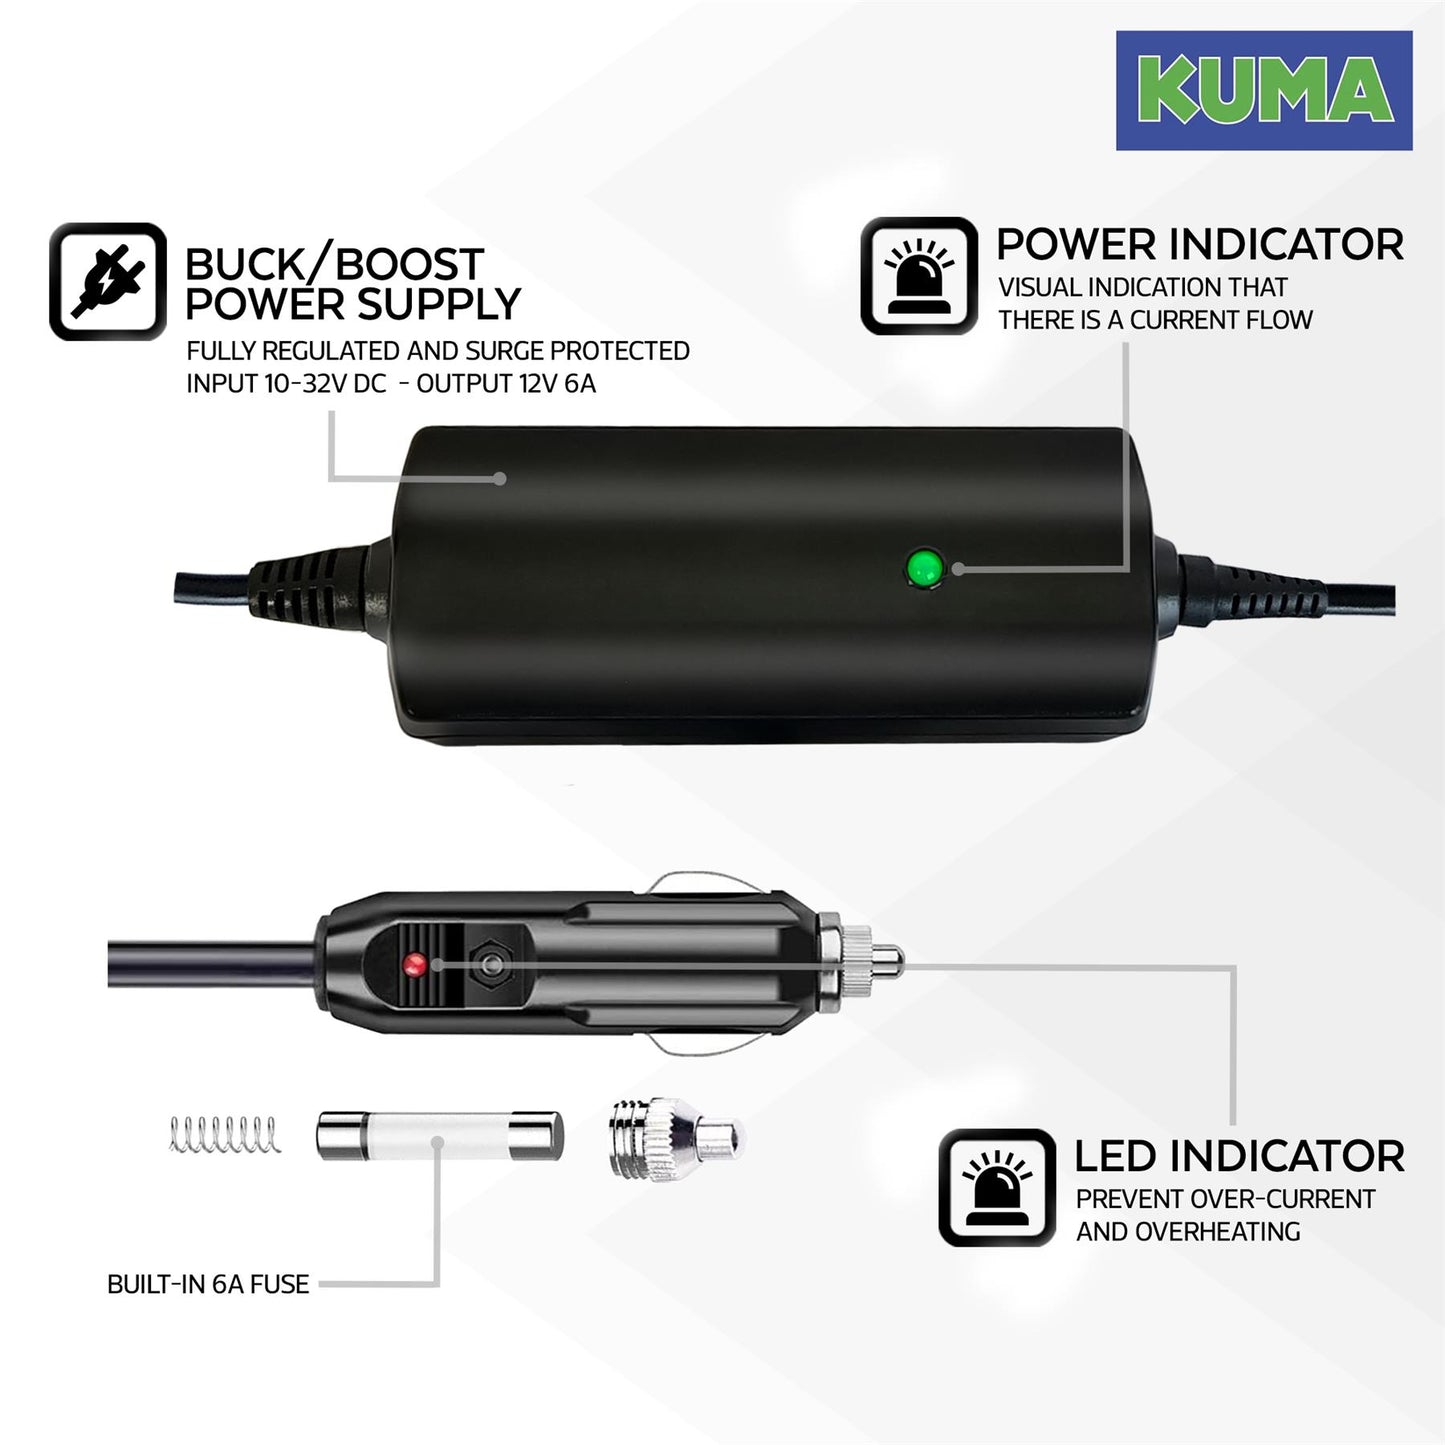 KUMA 12v TV Power Lead - Voltage Stabiliser Adapter with Cigarette Lighter Plug Input - Fully Regulated Adaptor Surge Protector Regulator for LED LCD SAT NAV Satellite Navigation Television - 12 volts